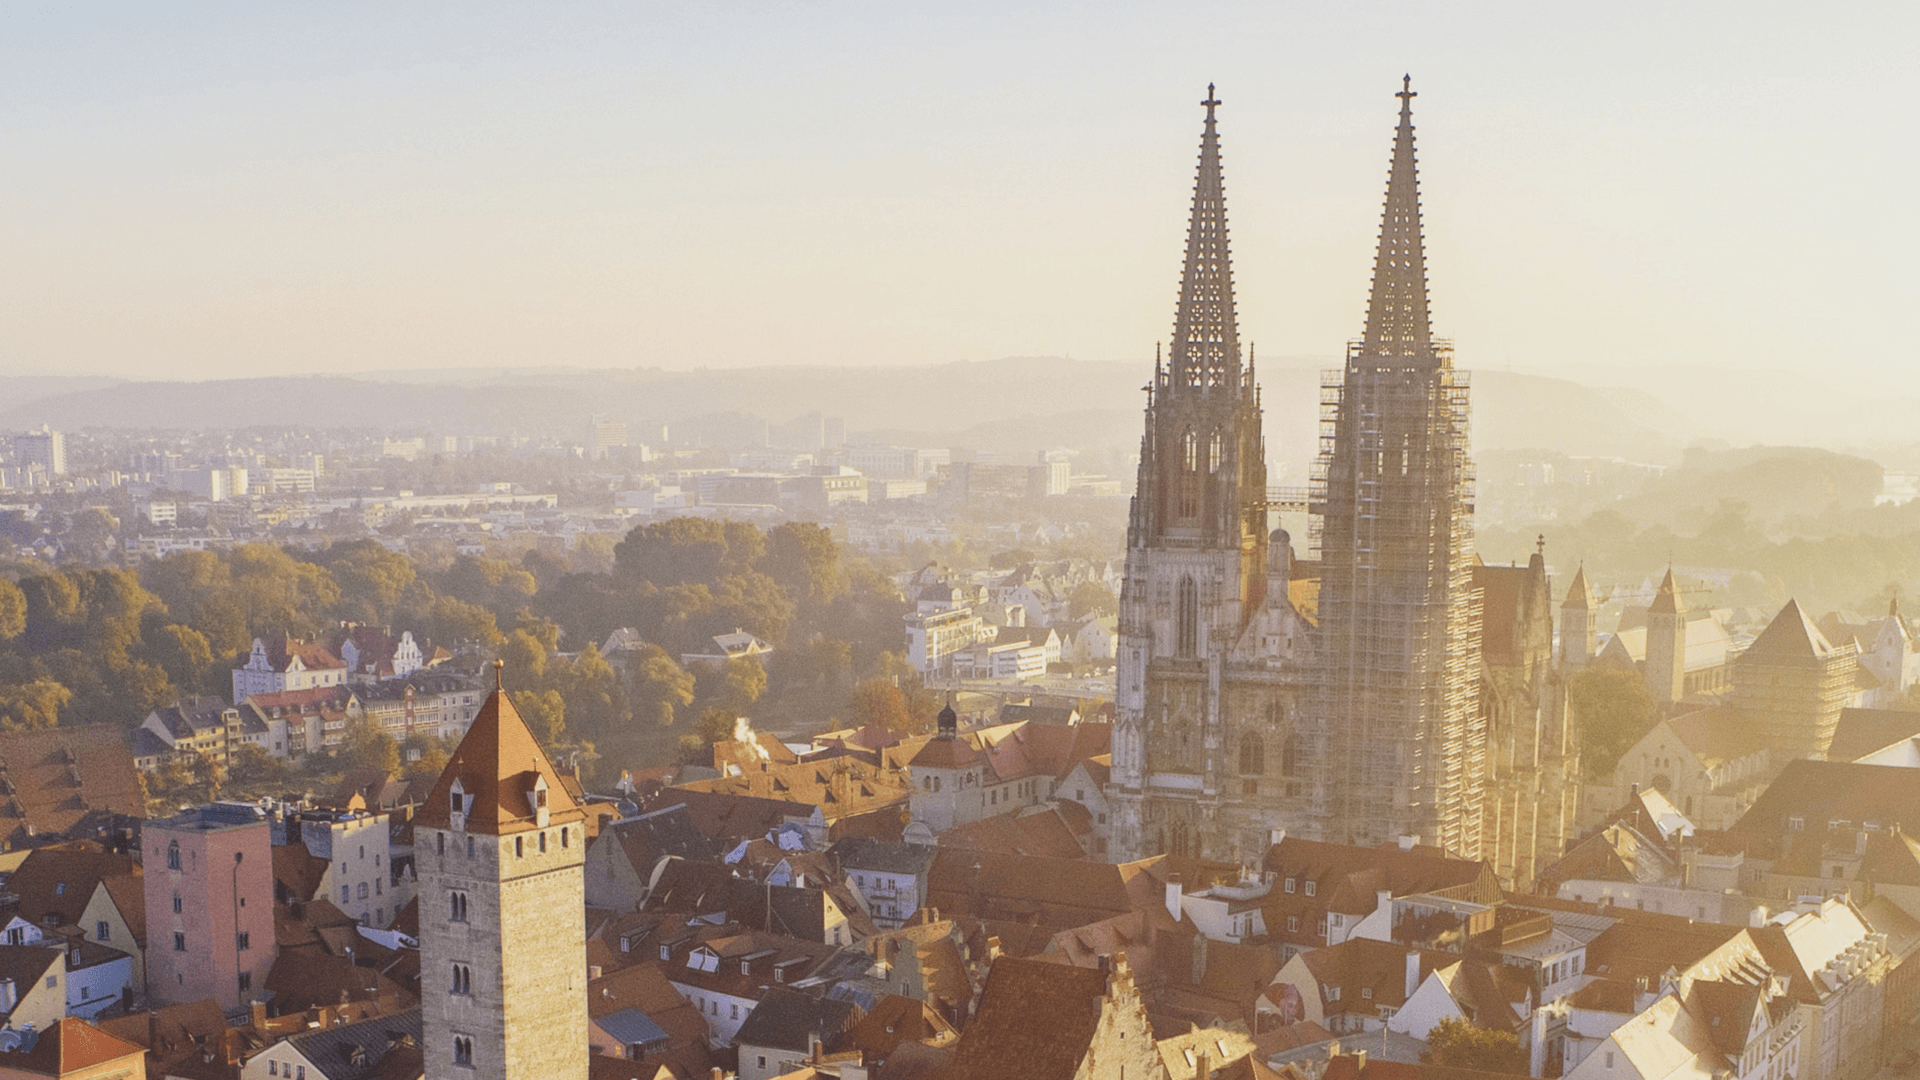 Regensburg, Stadt im Regierungsbezirk Oberpfalz in Ostbayern, fungiert als Kreisstadt des gleichnamigen Landkreises. Die Stadt ist ein zentraler Wirtschaftsstandort in der Region und spielt eine maßgebliche Rolle als Oberzentrum.